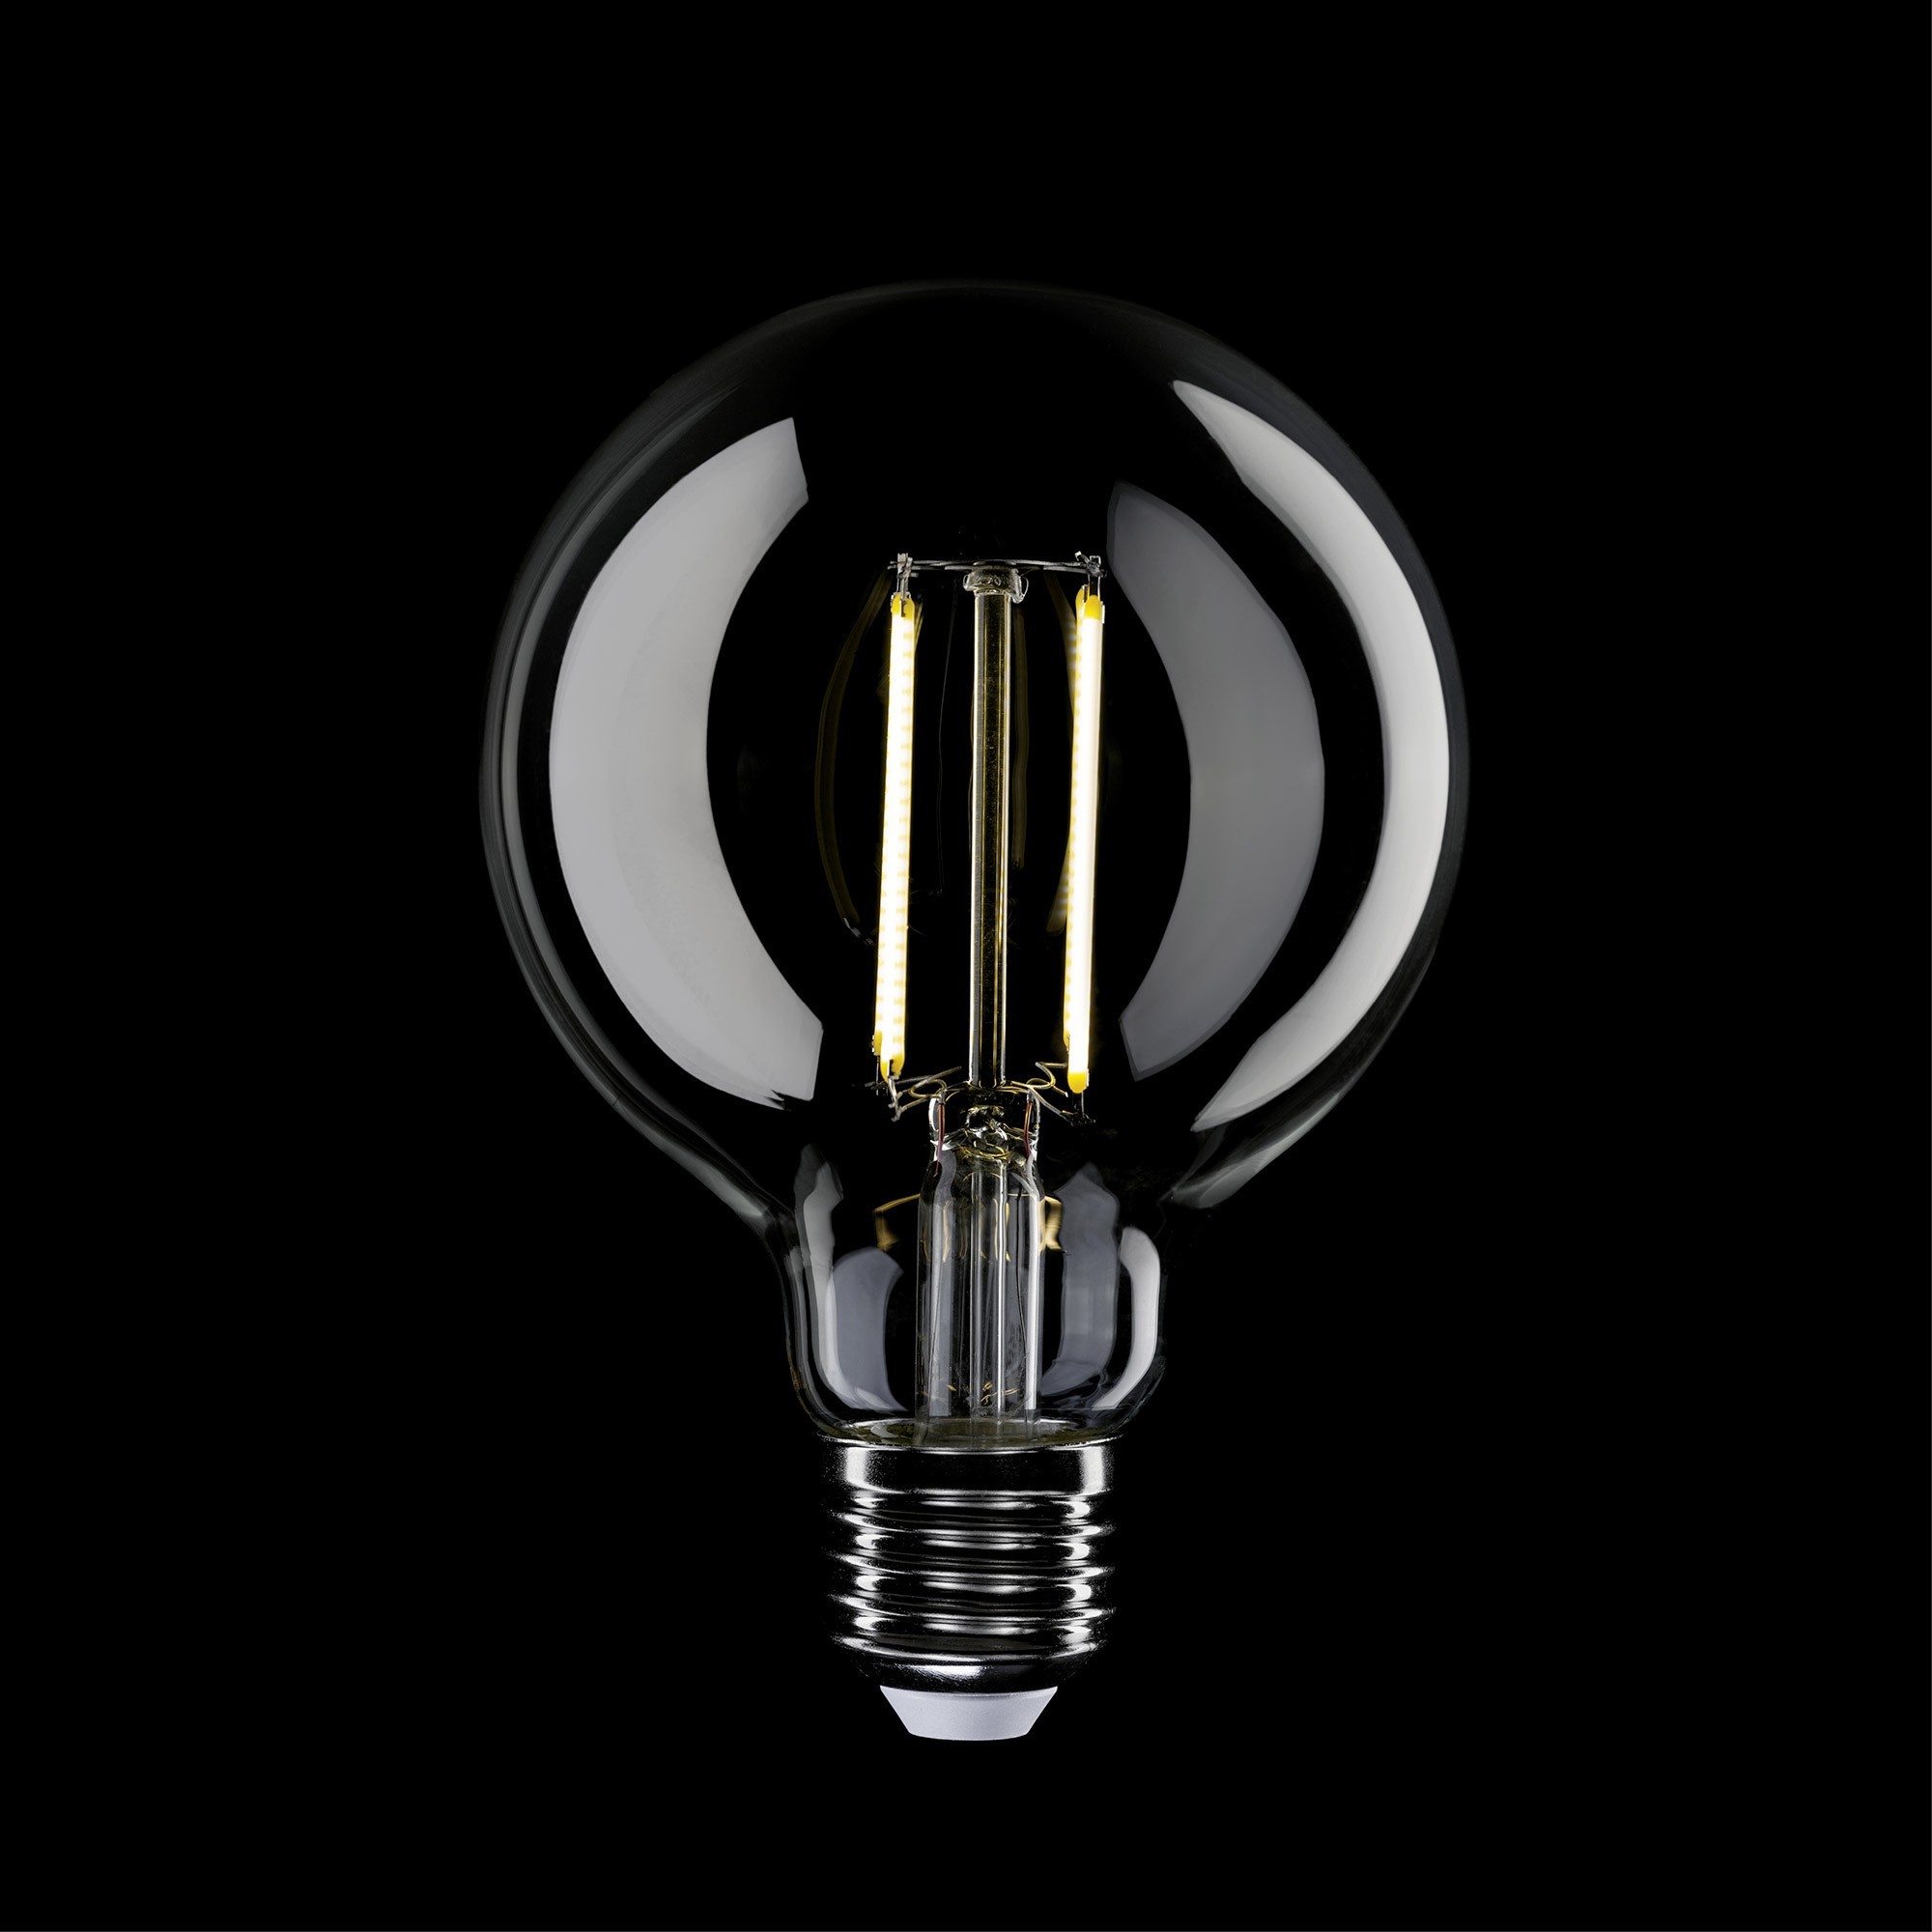 N03 - LED G95 Light Bulb, E27, 7W, 3500K, 806Lm, clear glass